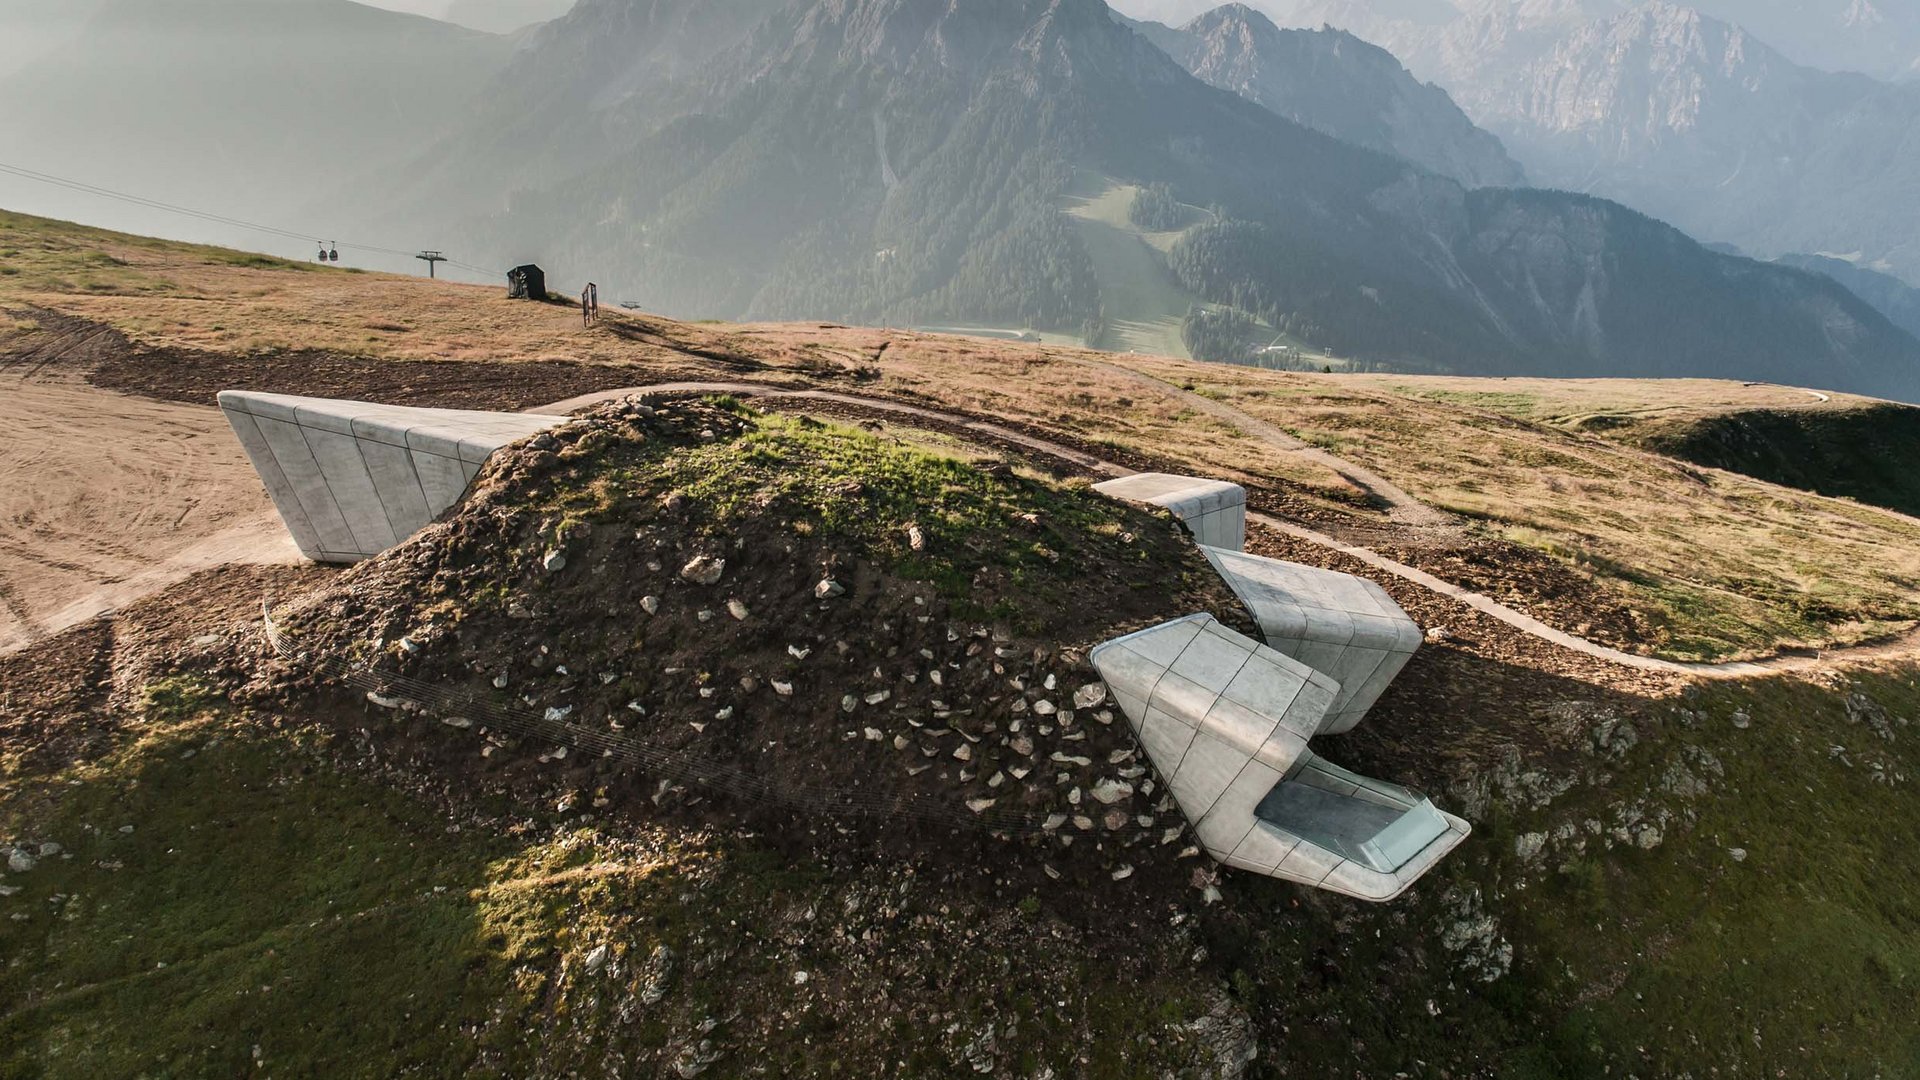 Die Sehenswürdigkeiten im Ahrntal in Südtirol entdecken – hier!